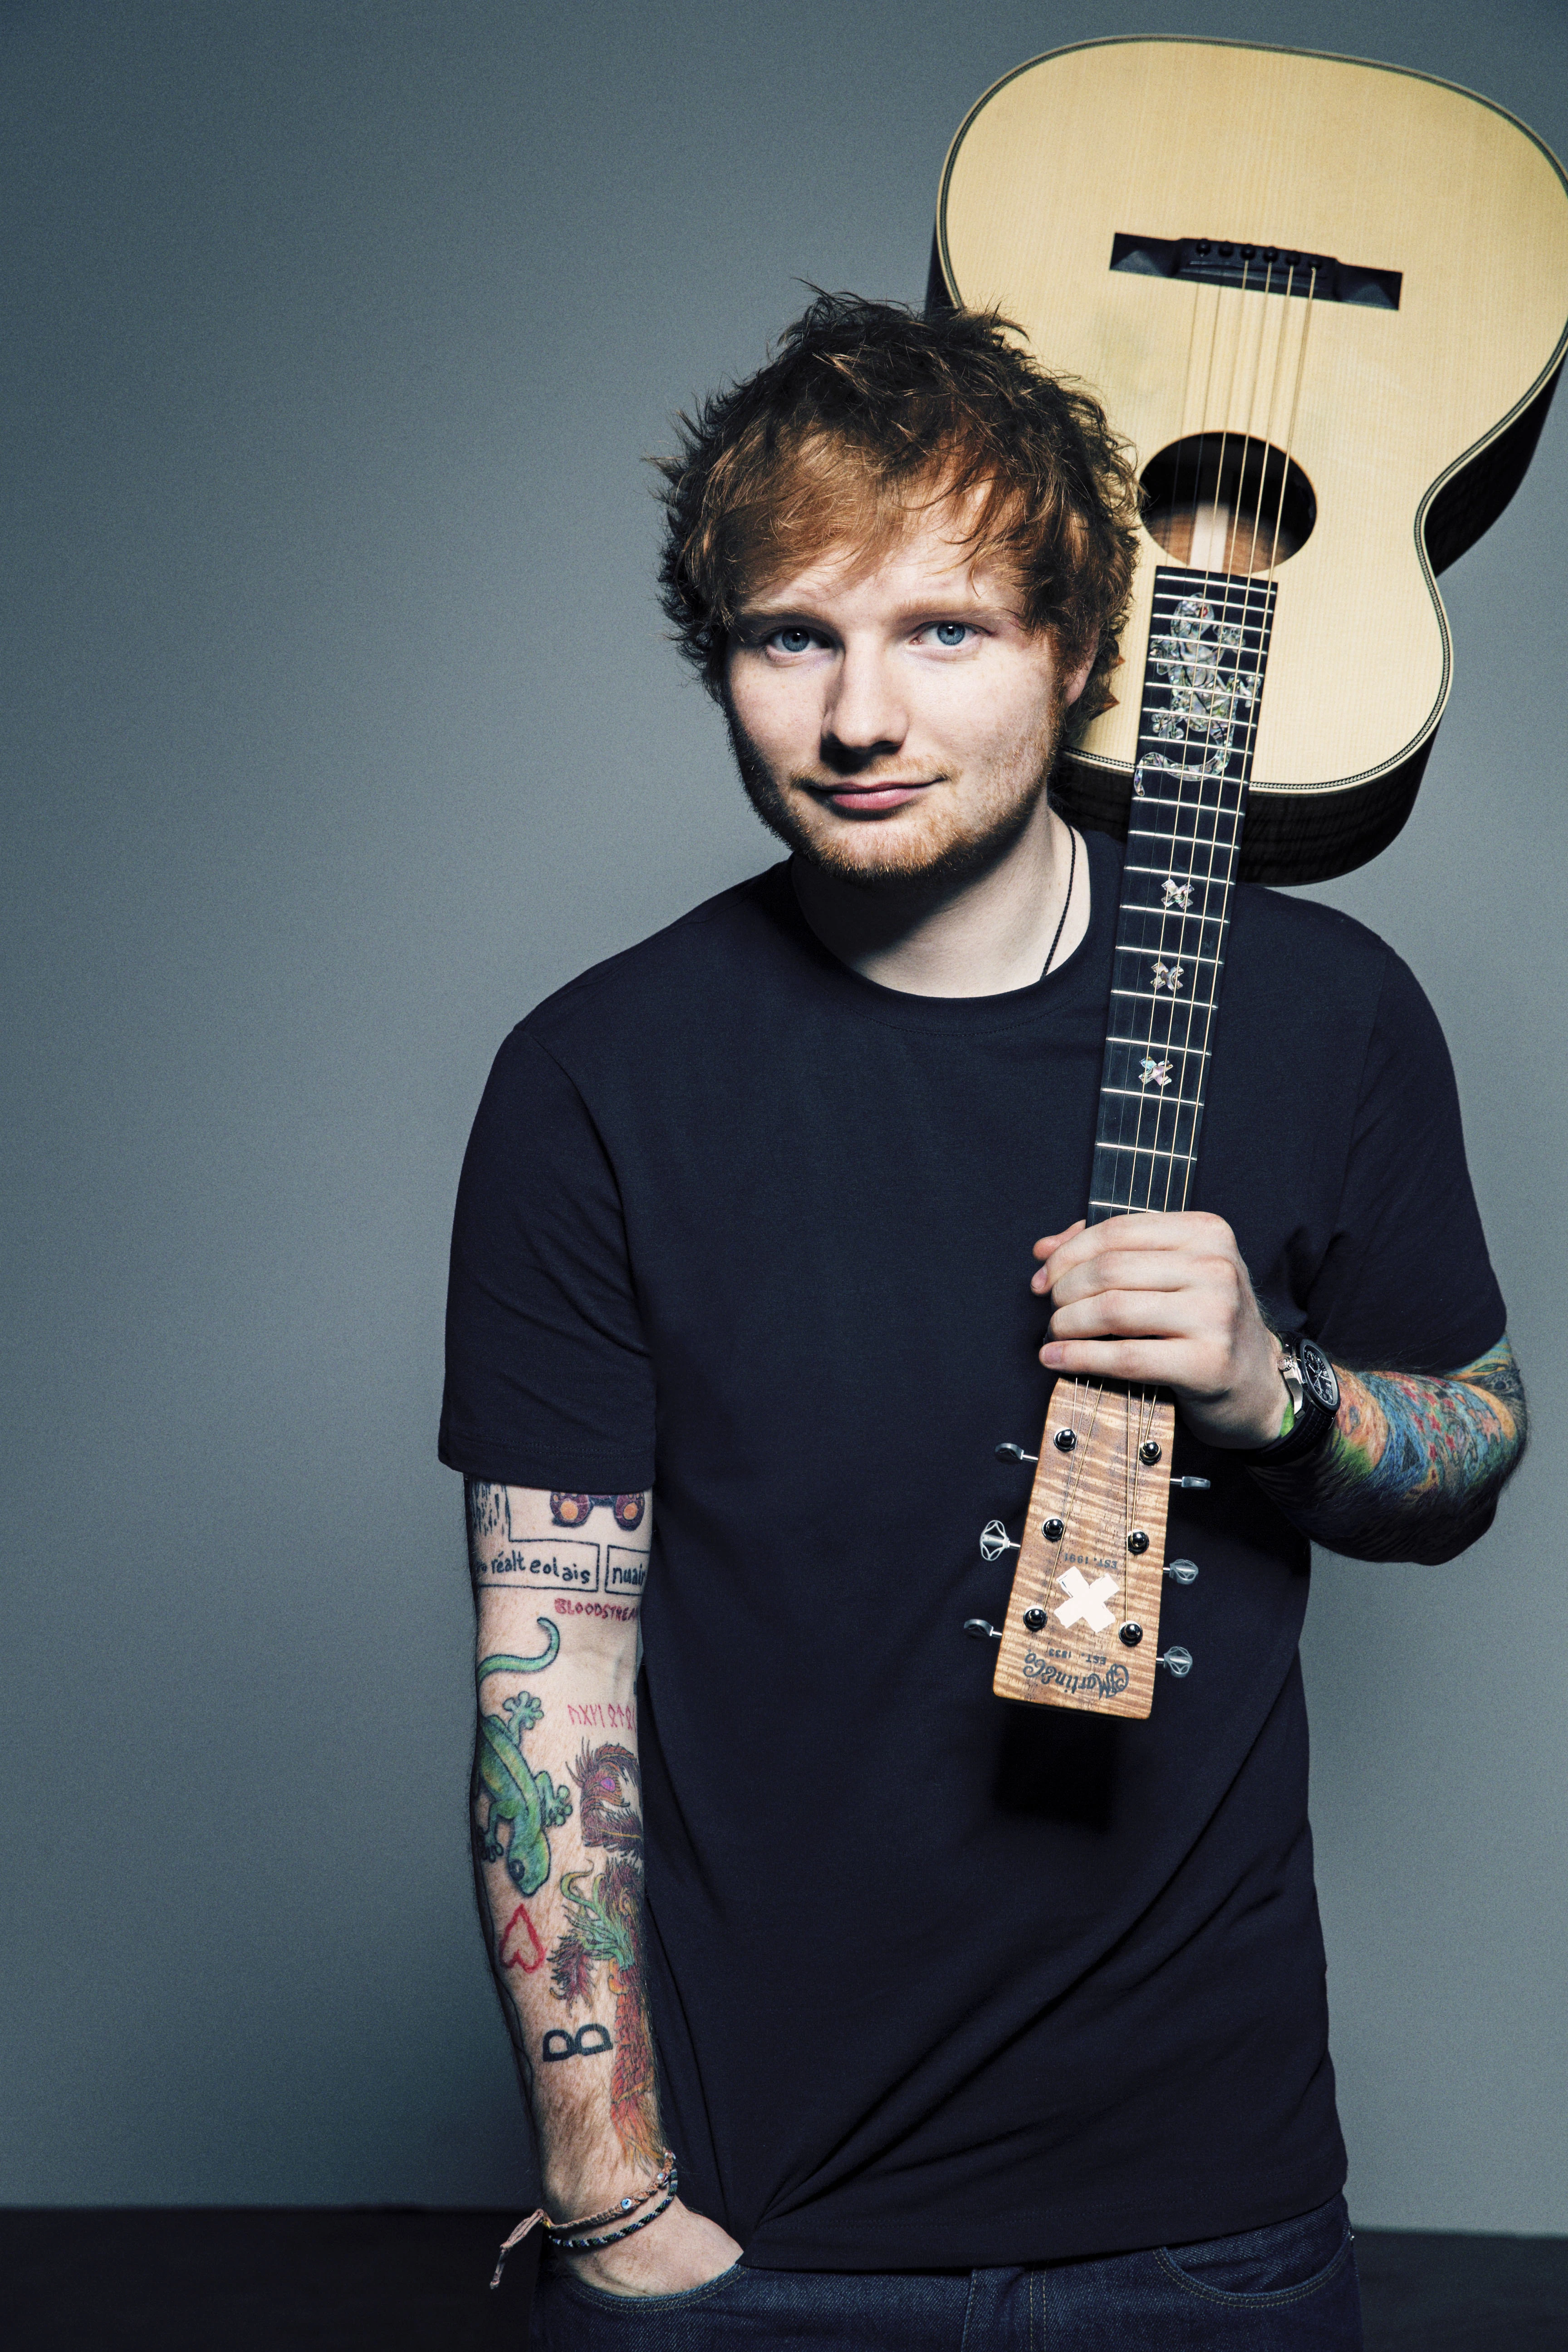 Ed Sheeran - Songs, Wife & Age